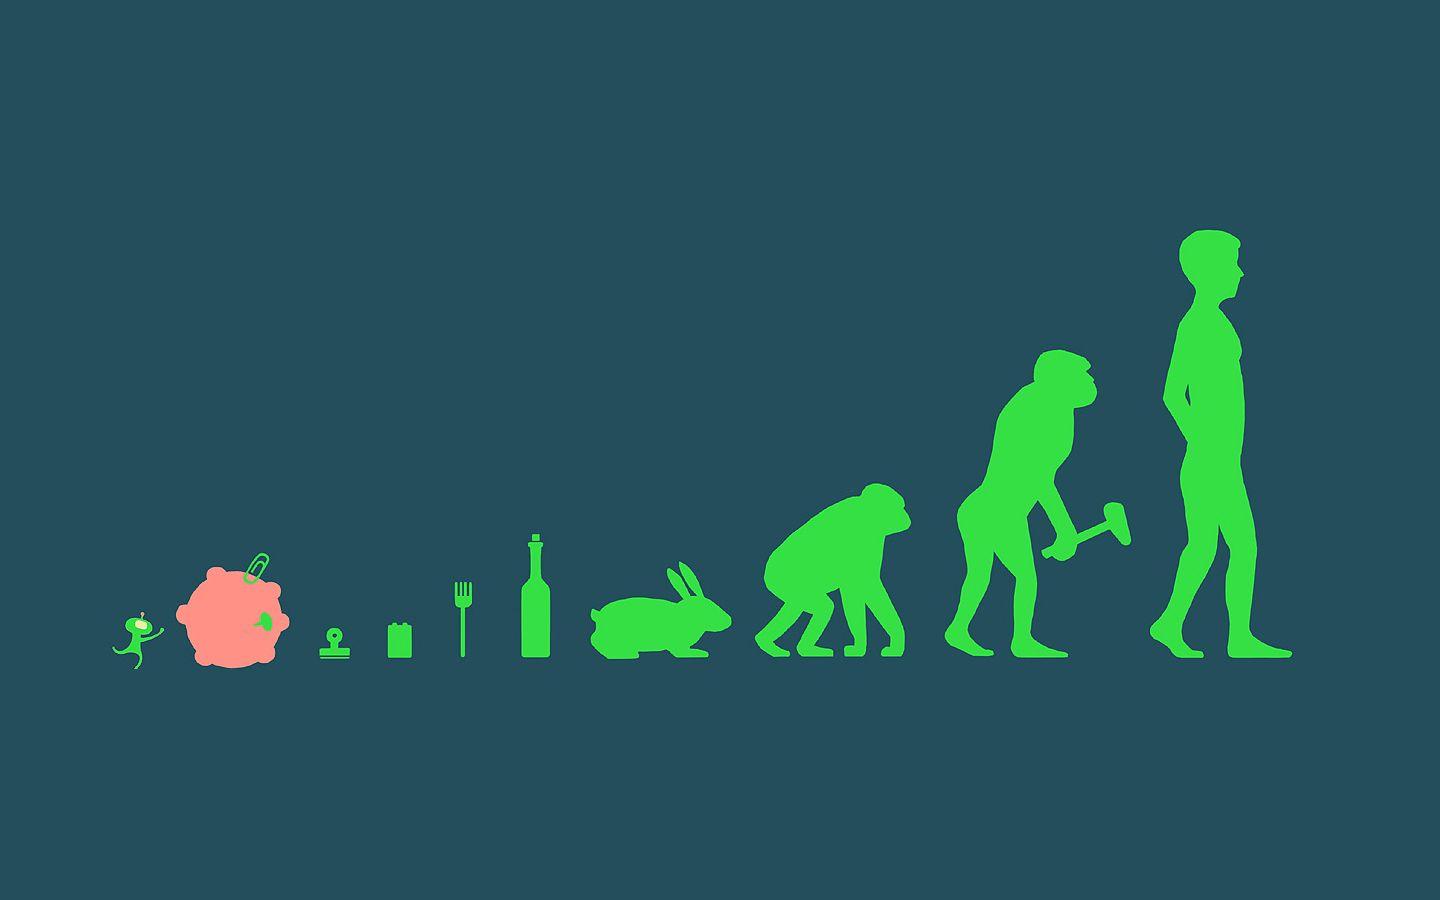 Download the Levels of Evolution Wallpaper, Levels of Evolution